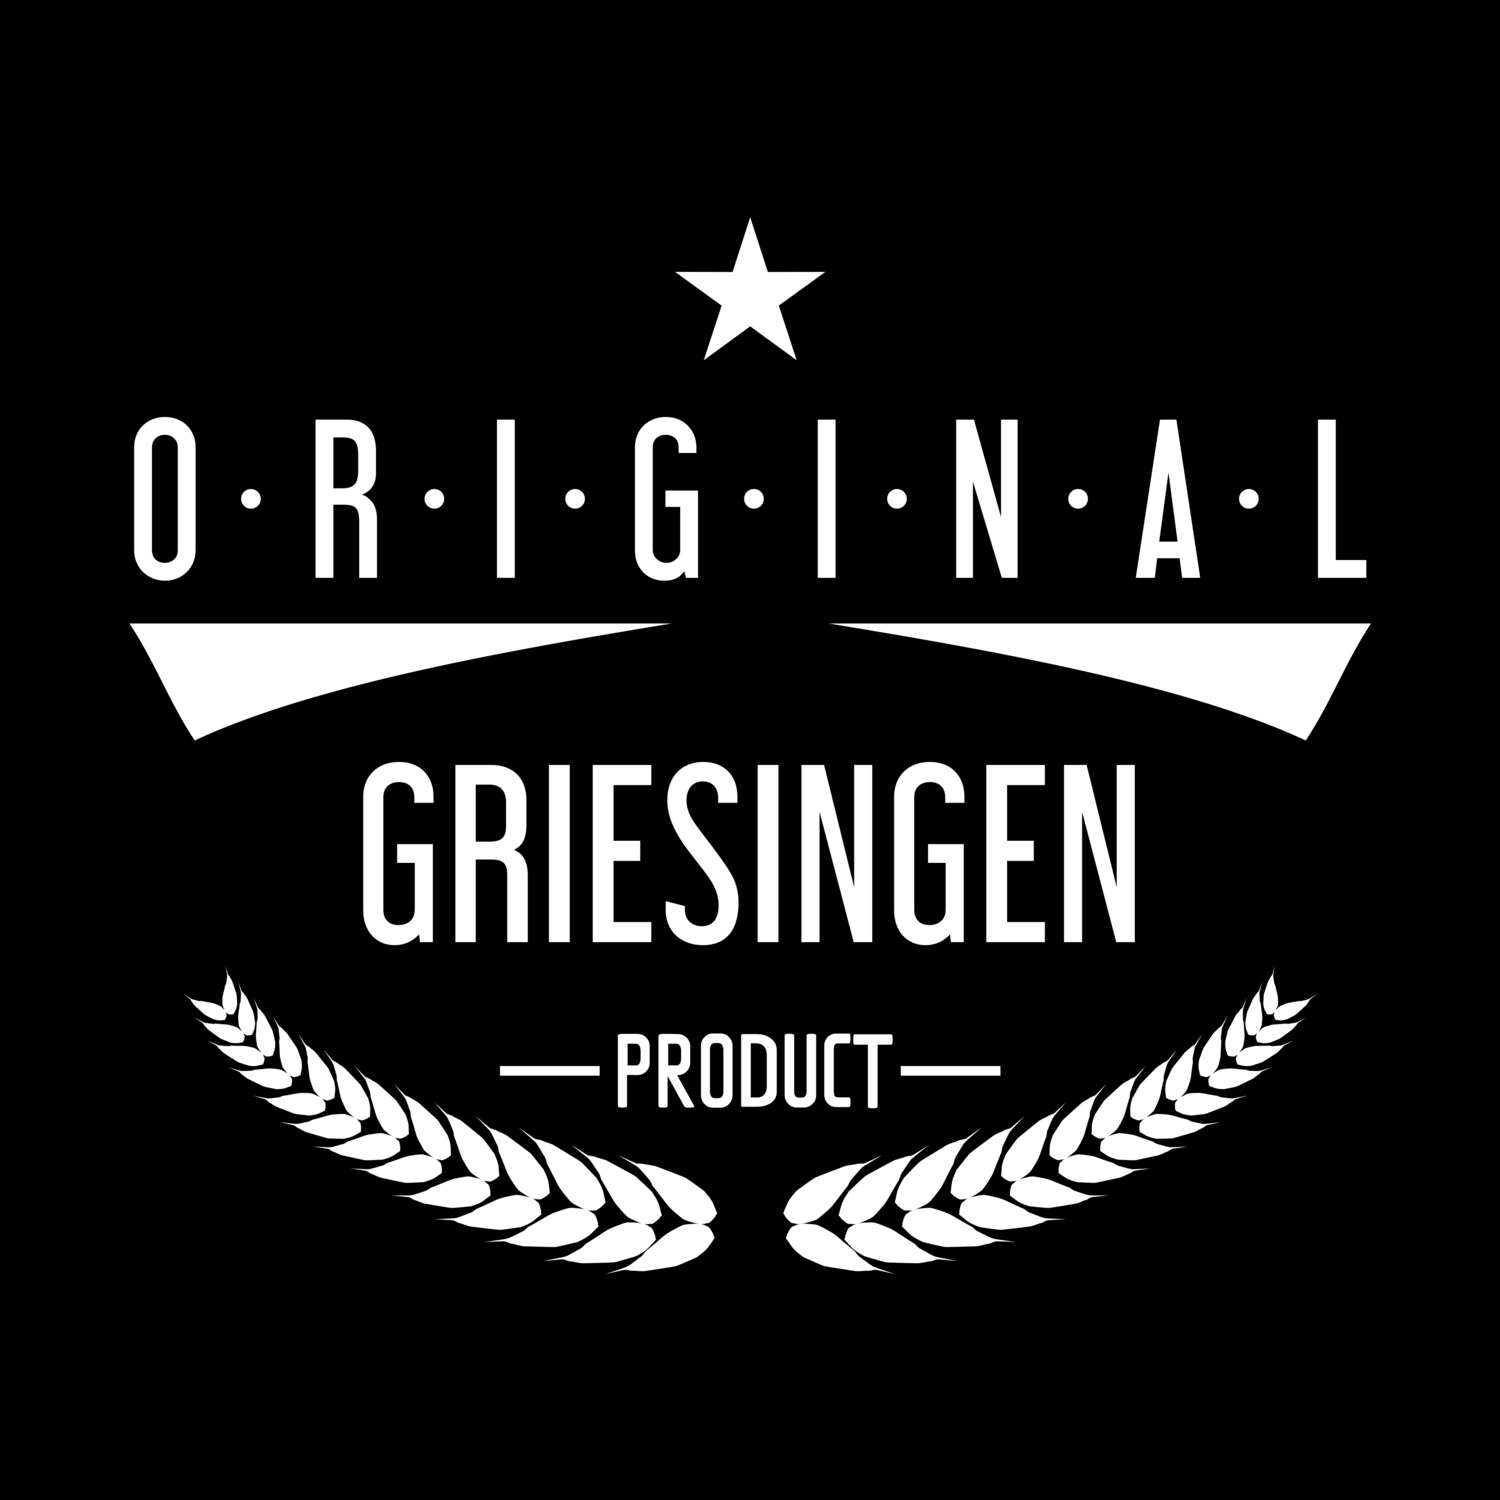 Griesingen T-Shirt »Original Product«